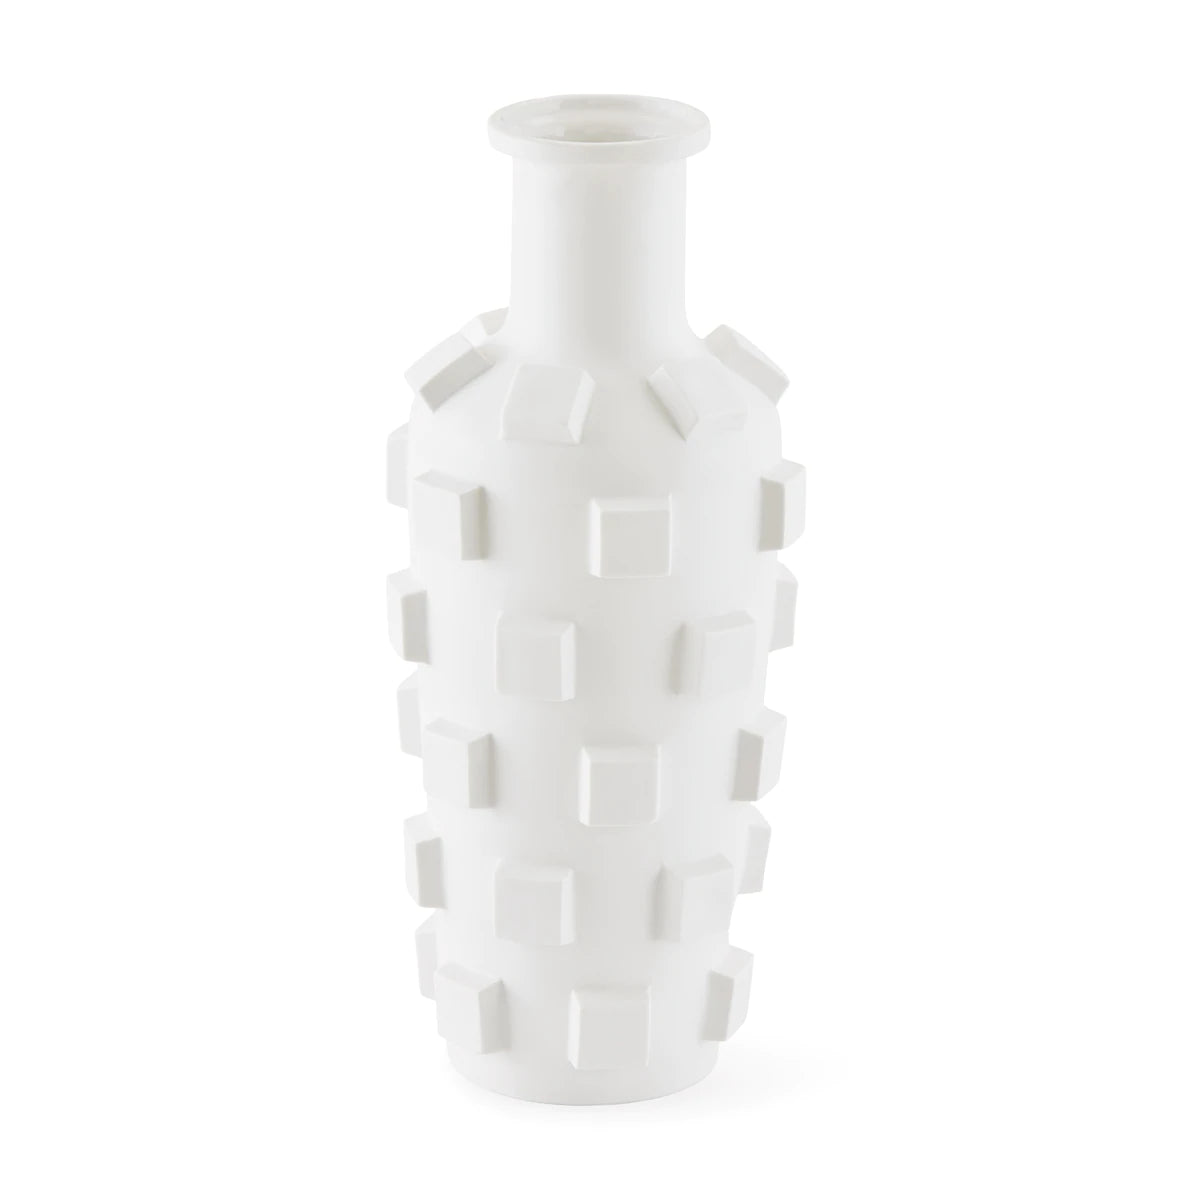 Charade Blocks Vase by Jonathan Adler